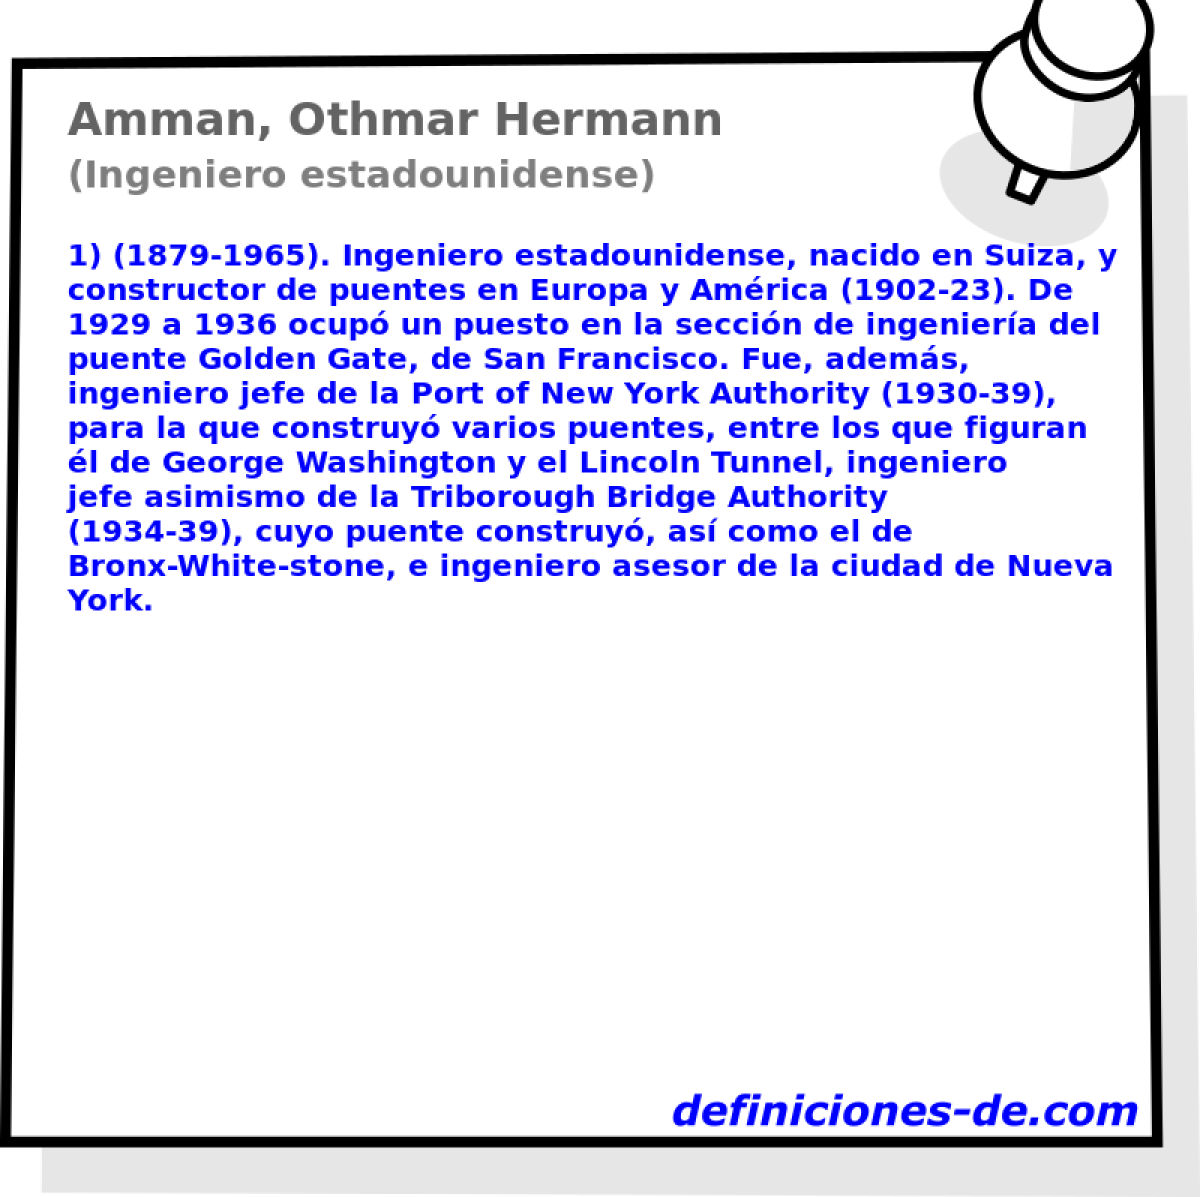 Amman, Othmar Hermann (Ingeniero estadounidense)